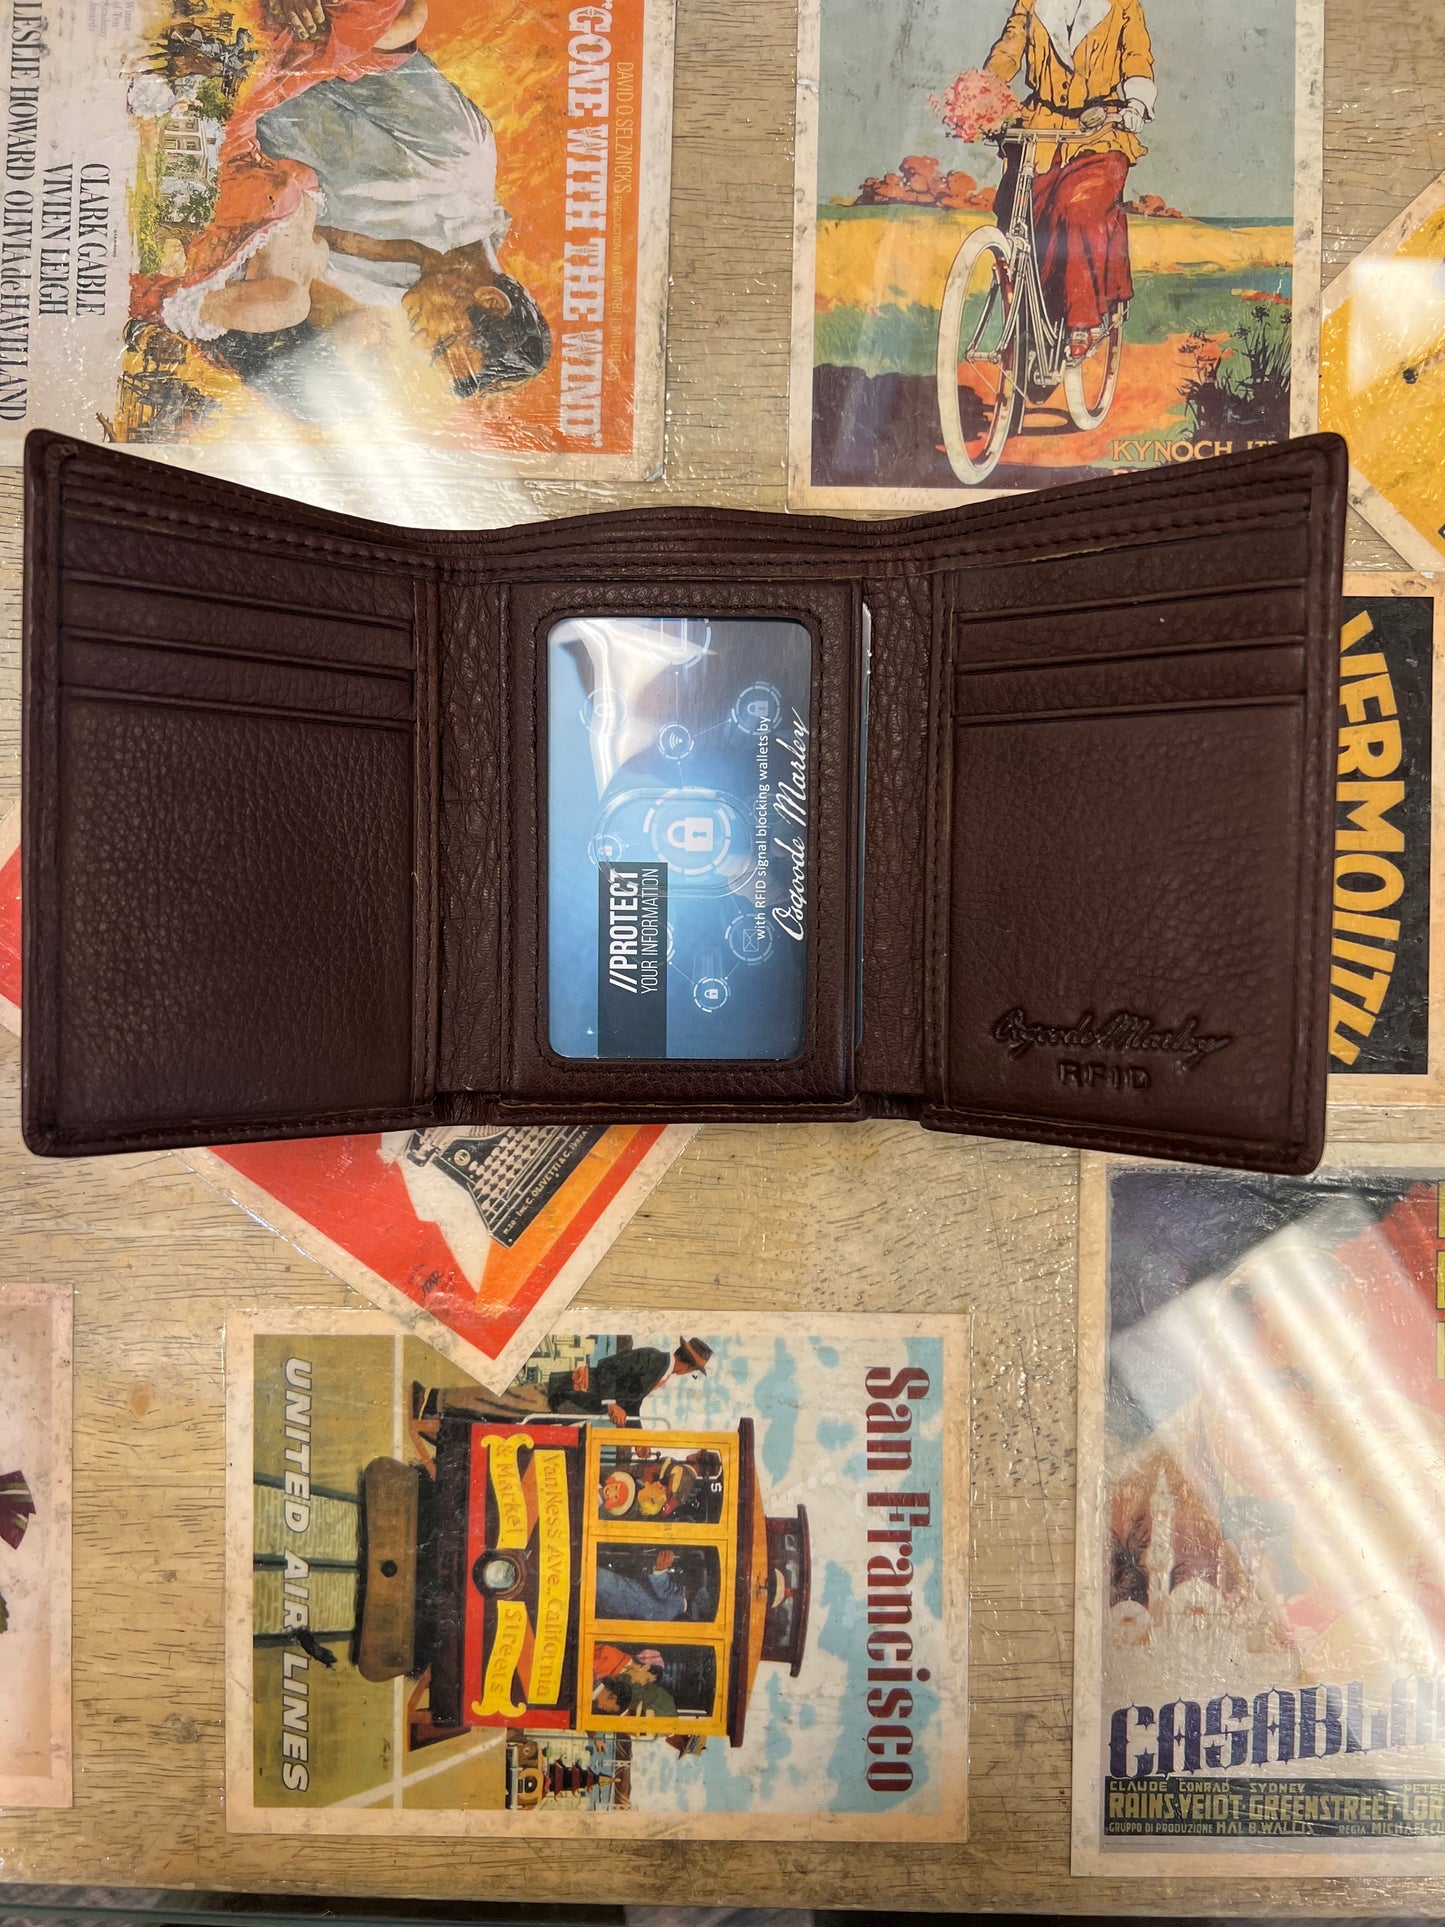 Osgoode Marley RFID ID Trifold Leather Wallet (Espresso)